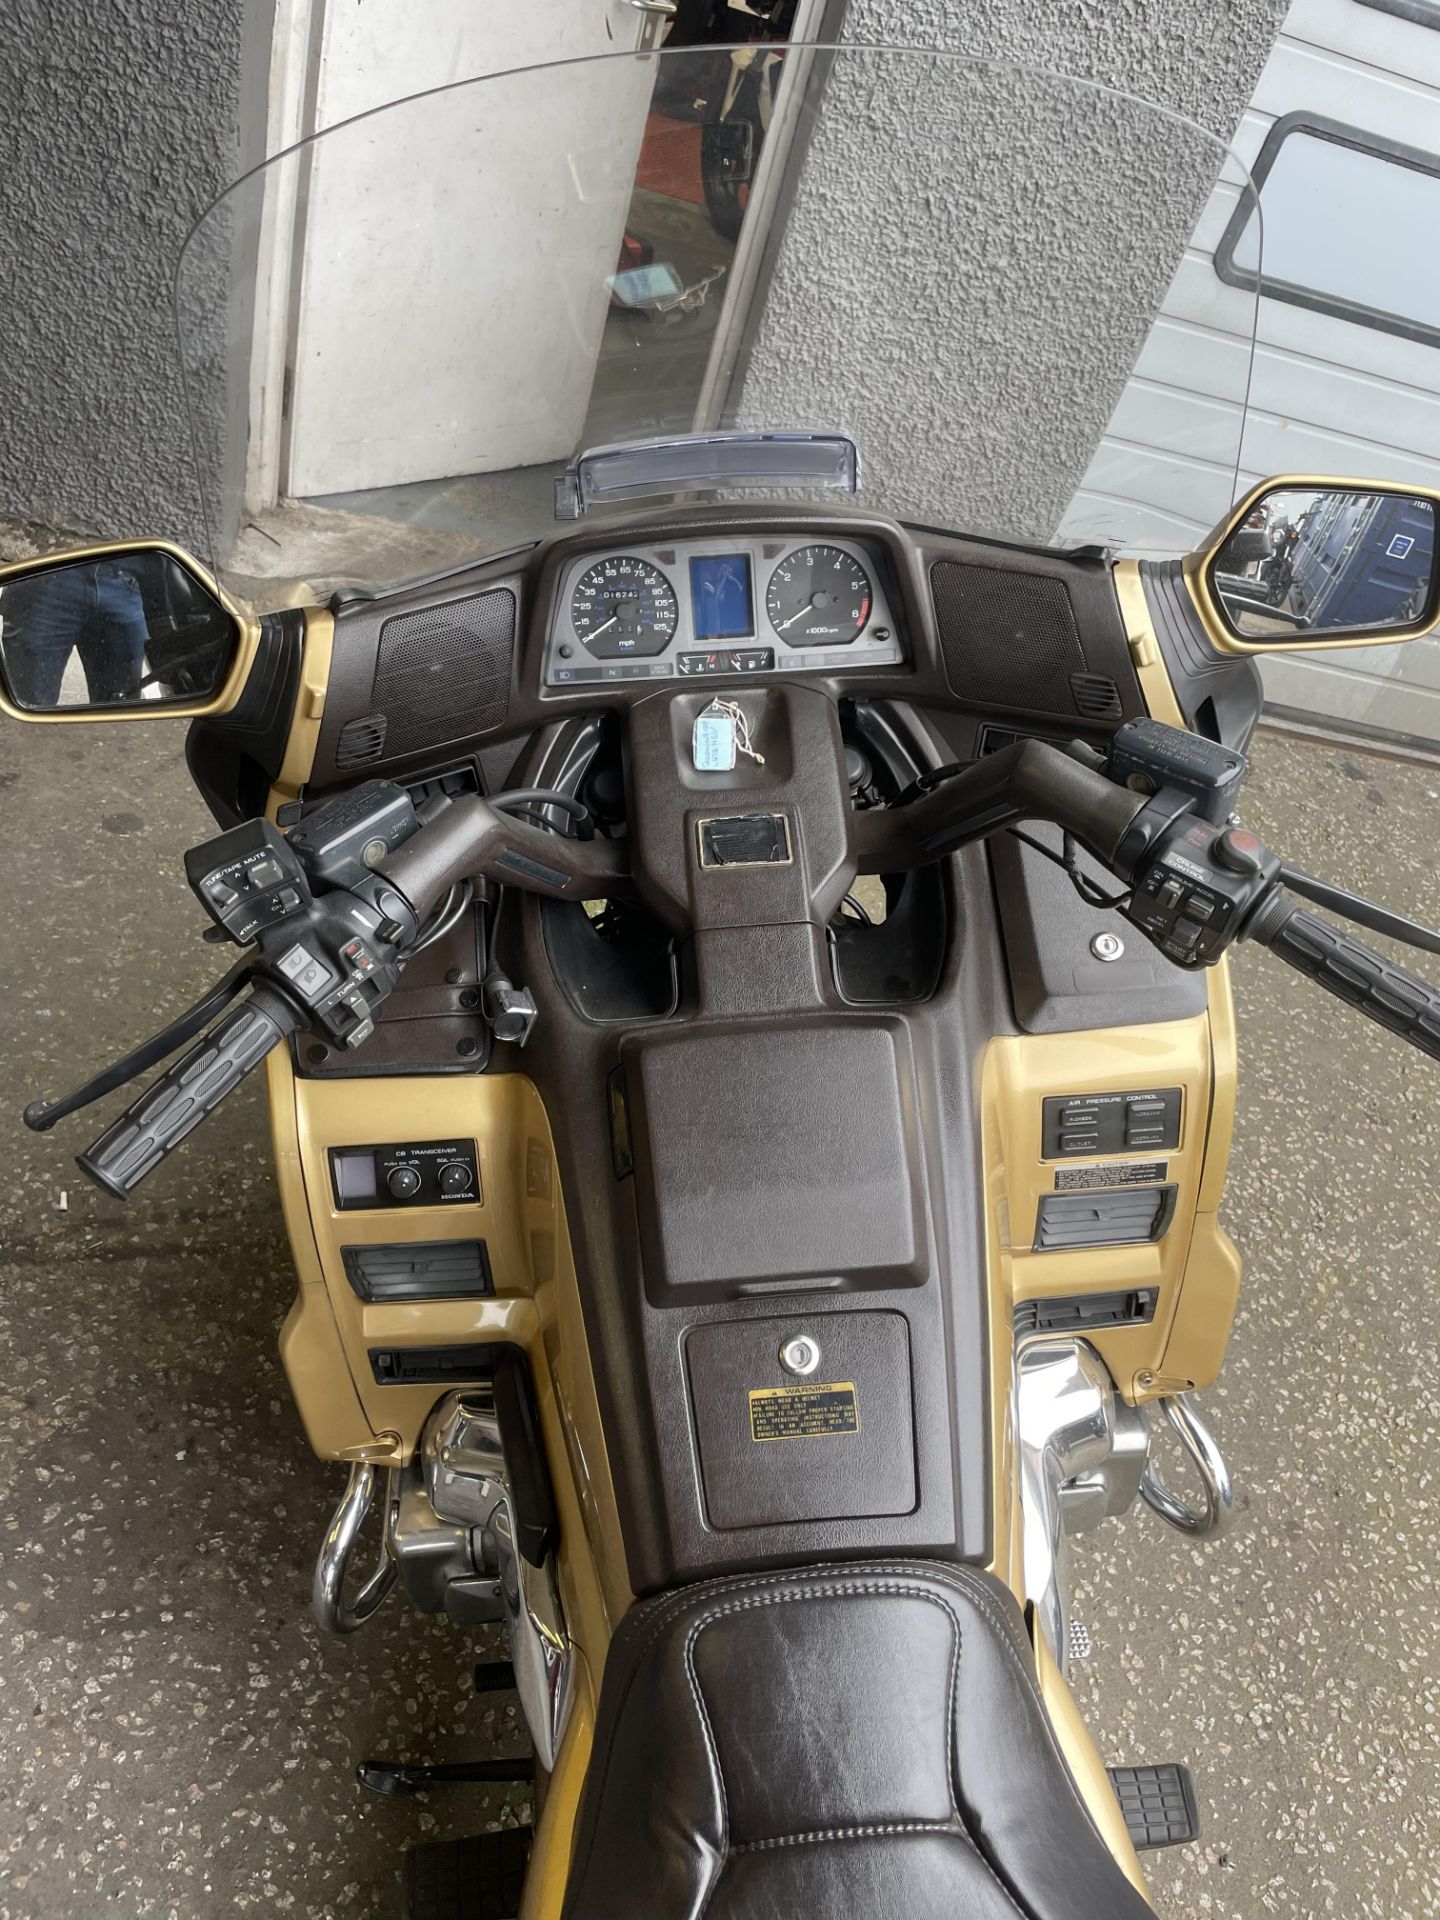 HONDA GOLDWING SE 1500, 6 CYLINDER MOTORBIKE - Image 6 of 6